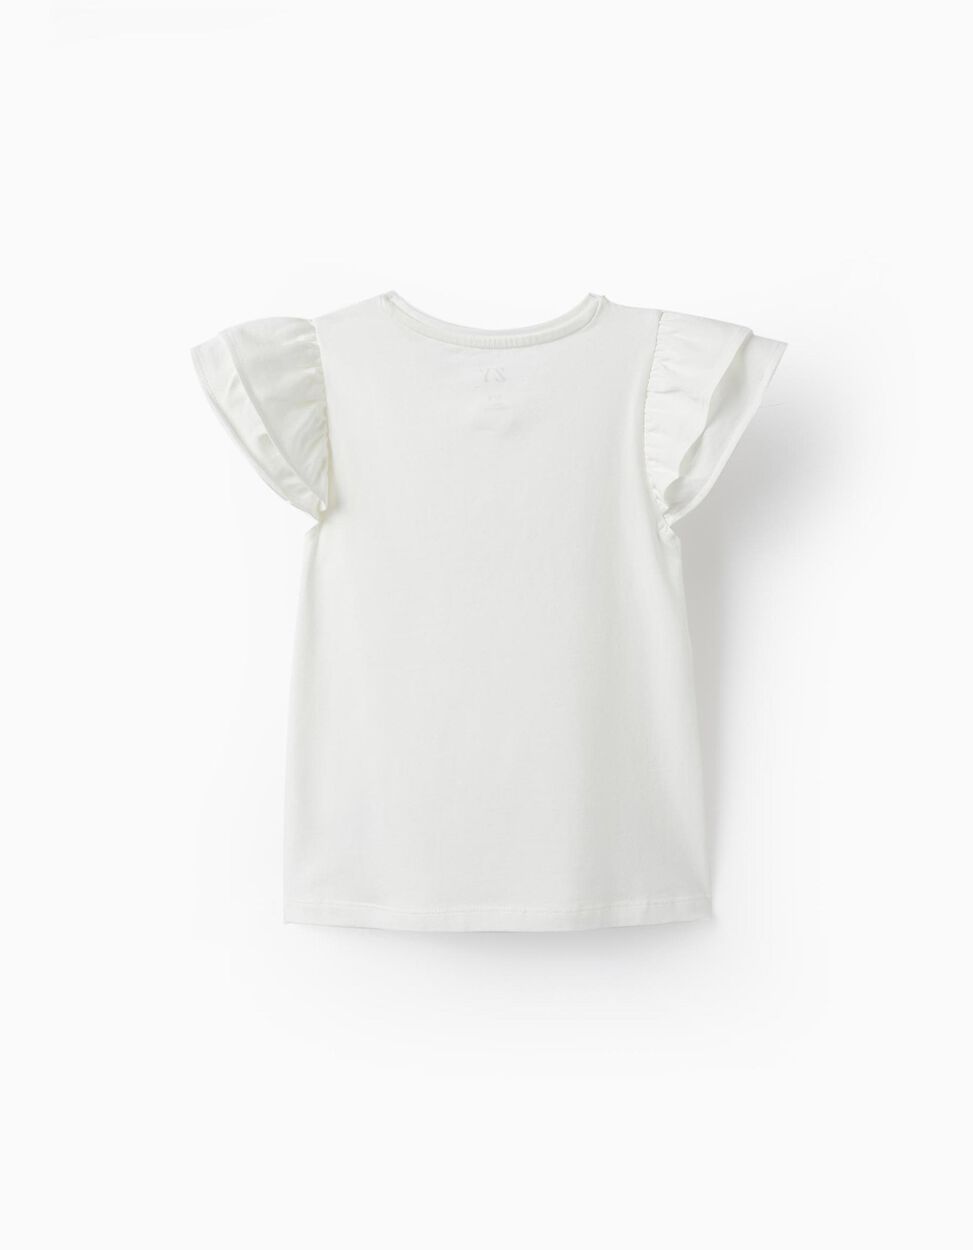 Comprar Online T-Shirt em Jersey de Algodão com Folhos e Brilhantes para Menina, Branco